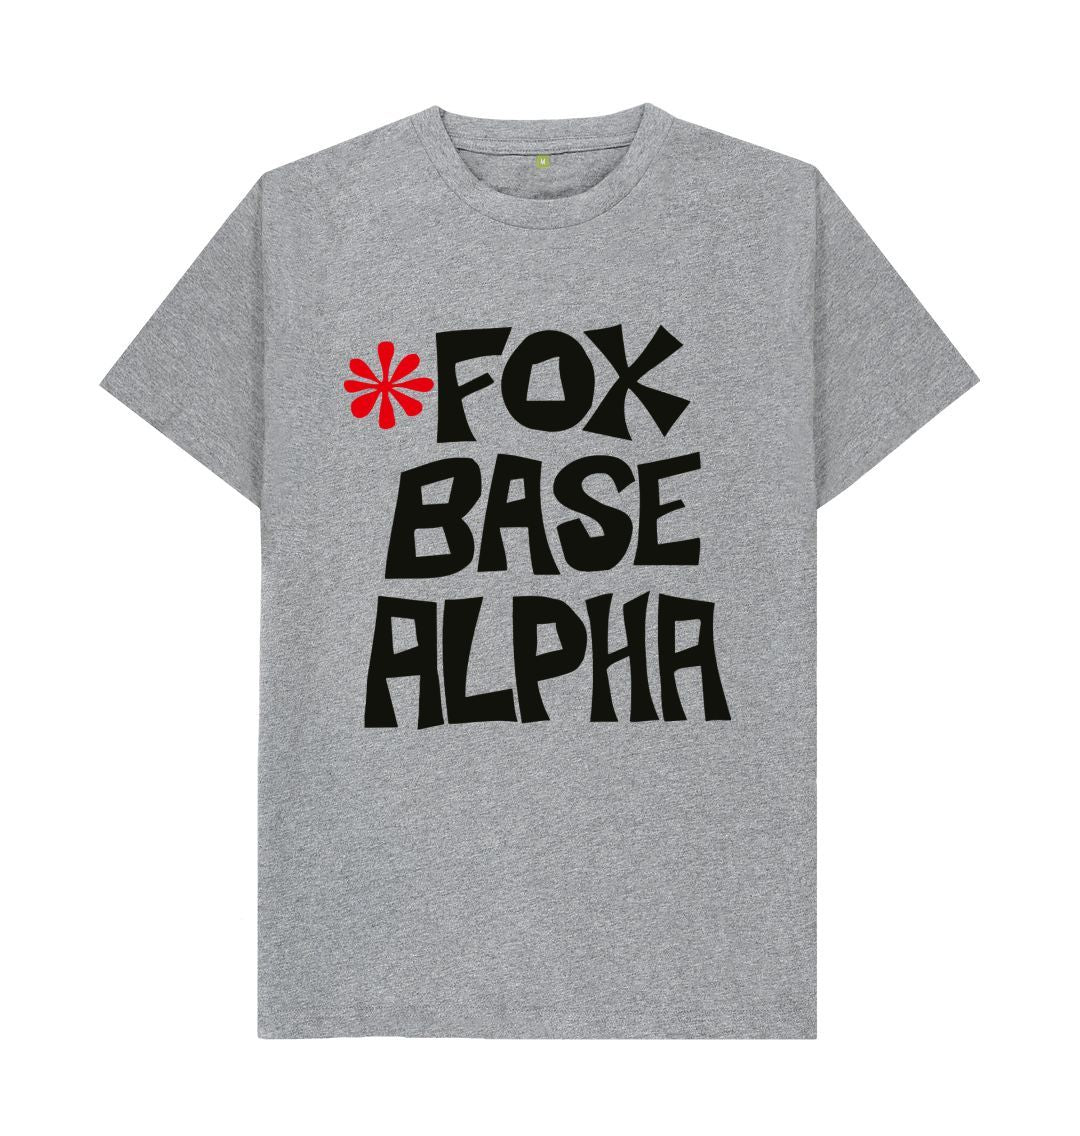 Athletic Grey Fox Base Alpha t-shirt